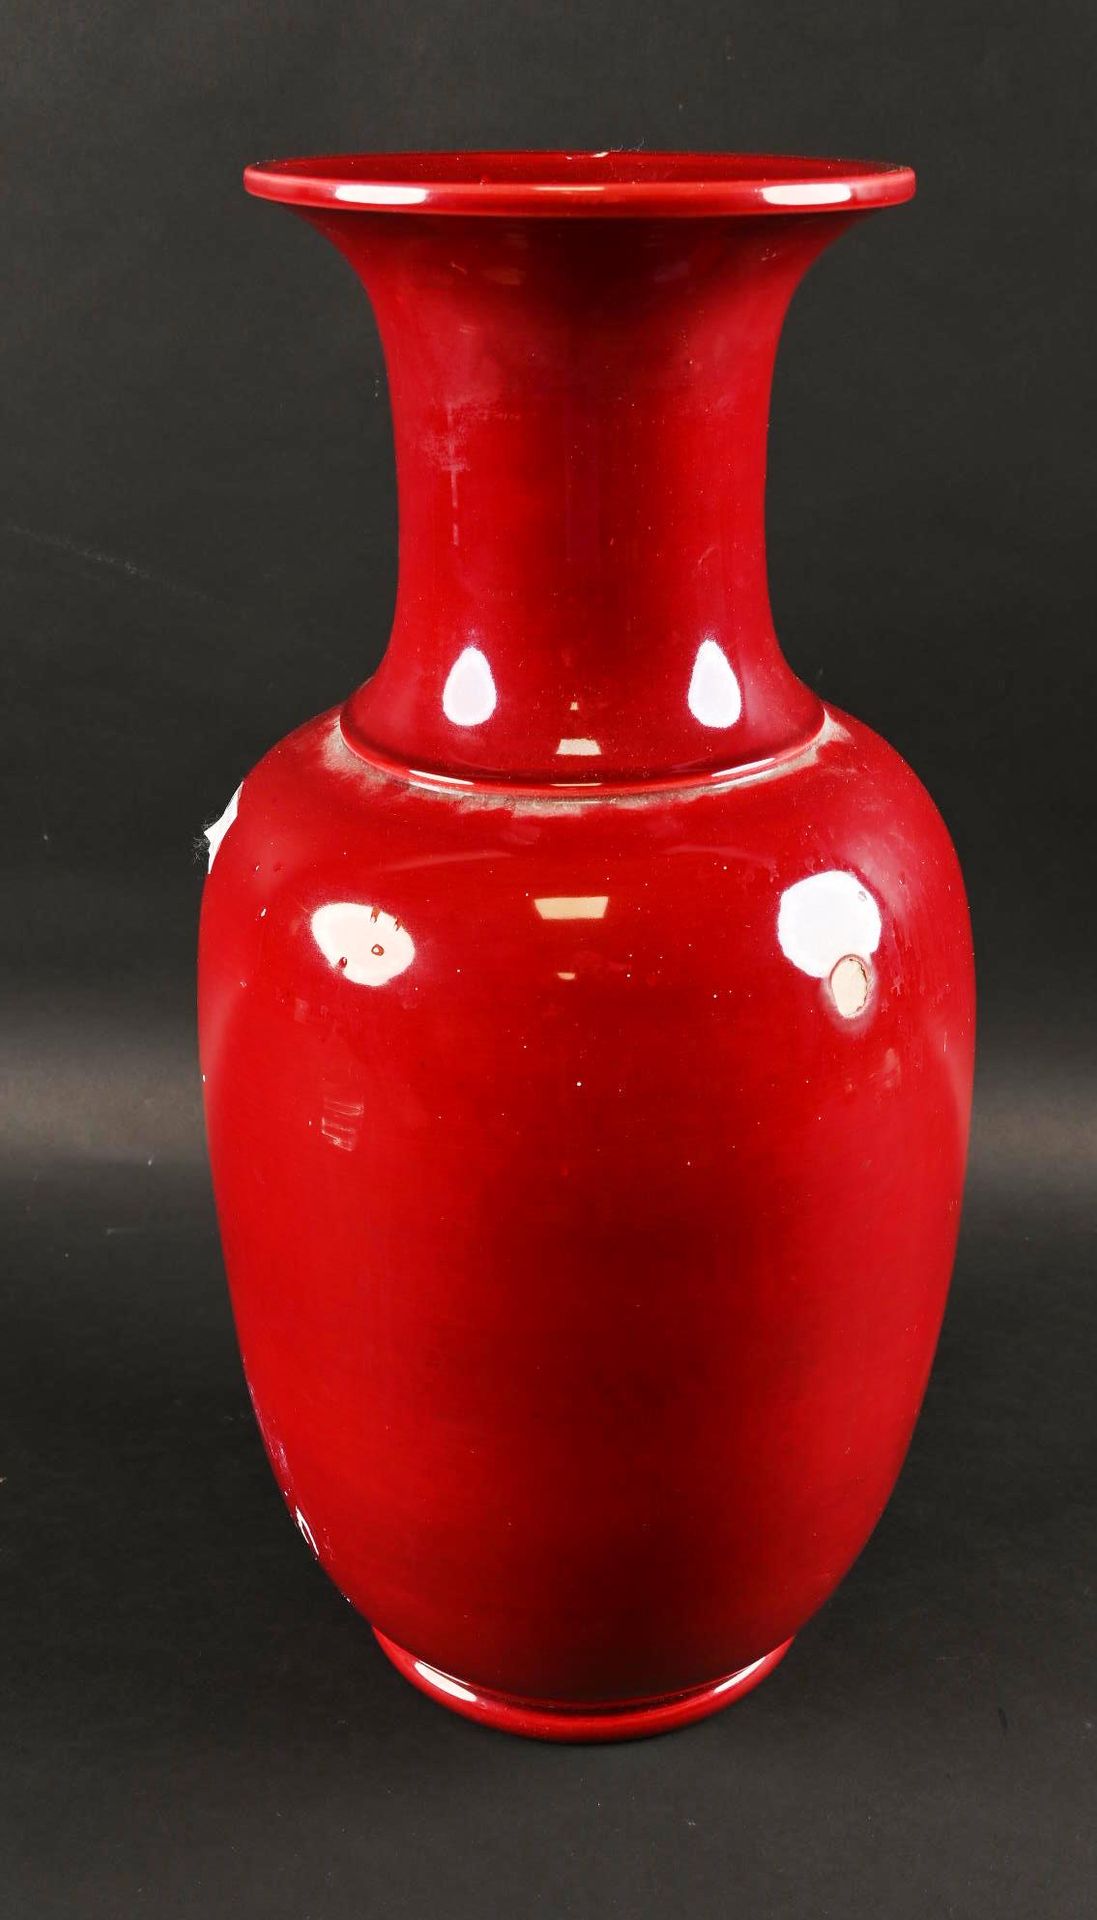 Grand vase en terre cuite vernissée rouge. Large vase in red glazed terracotta.
&hellip;